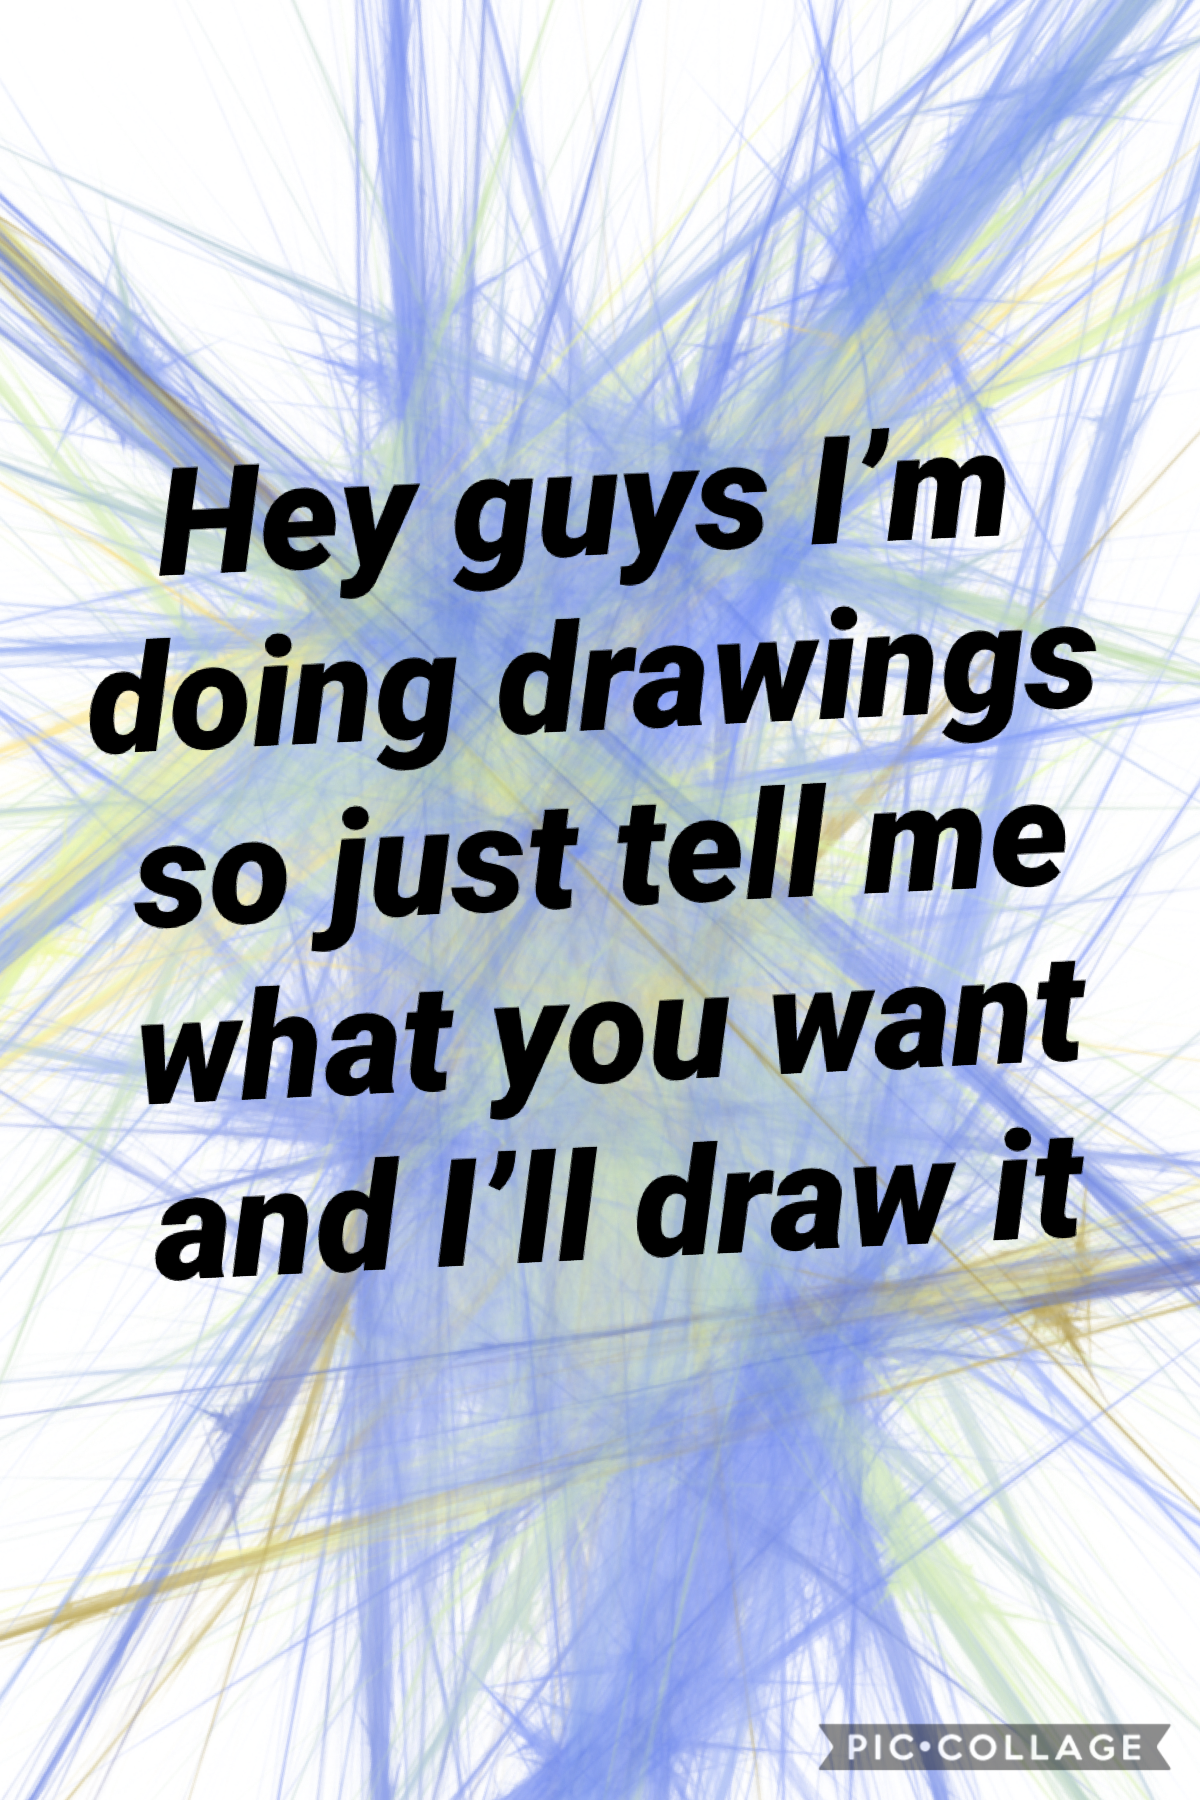 I’m taking drawings